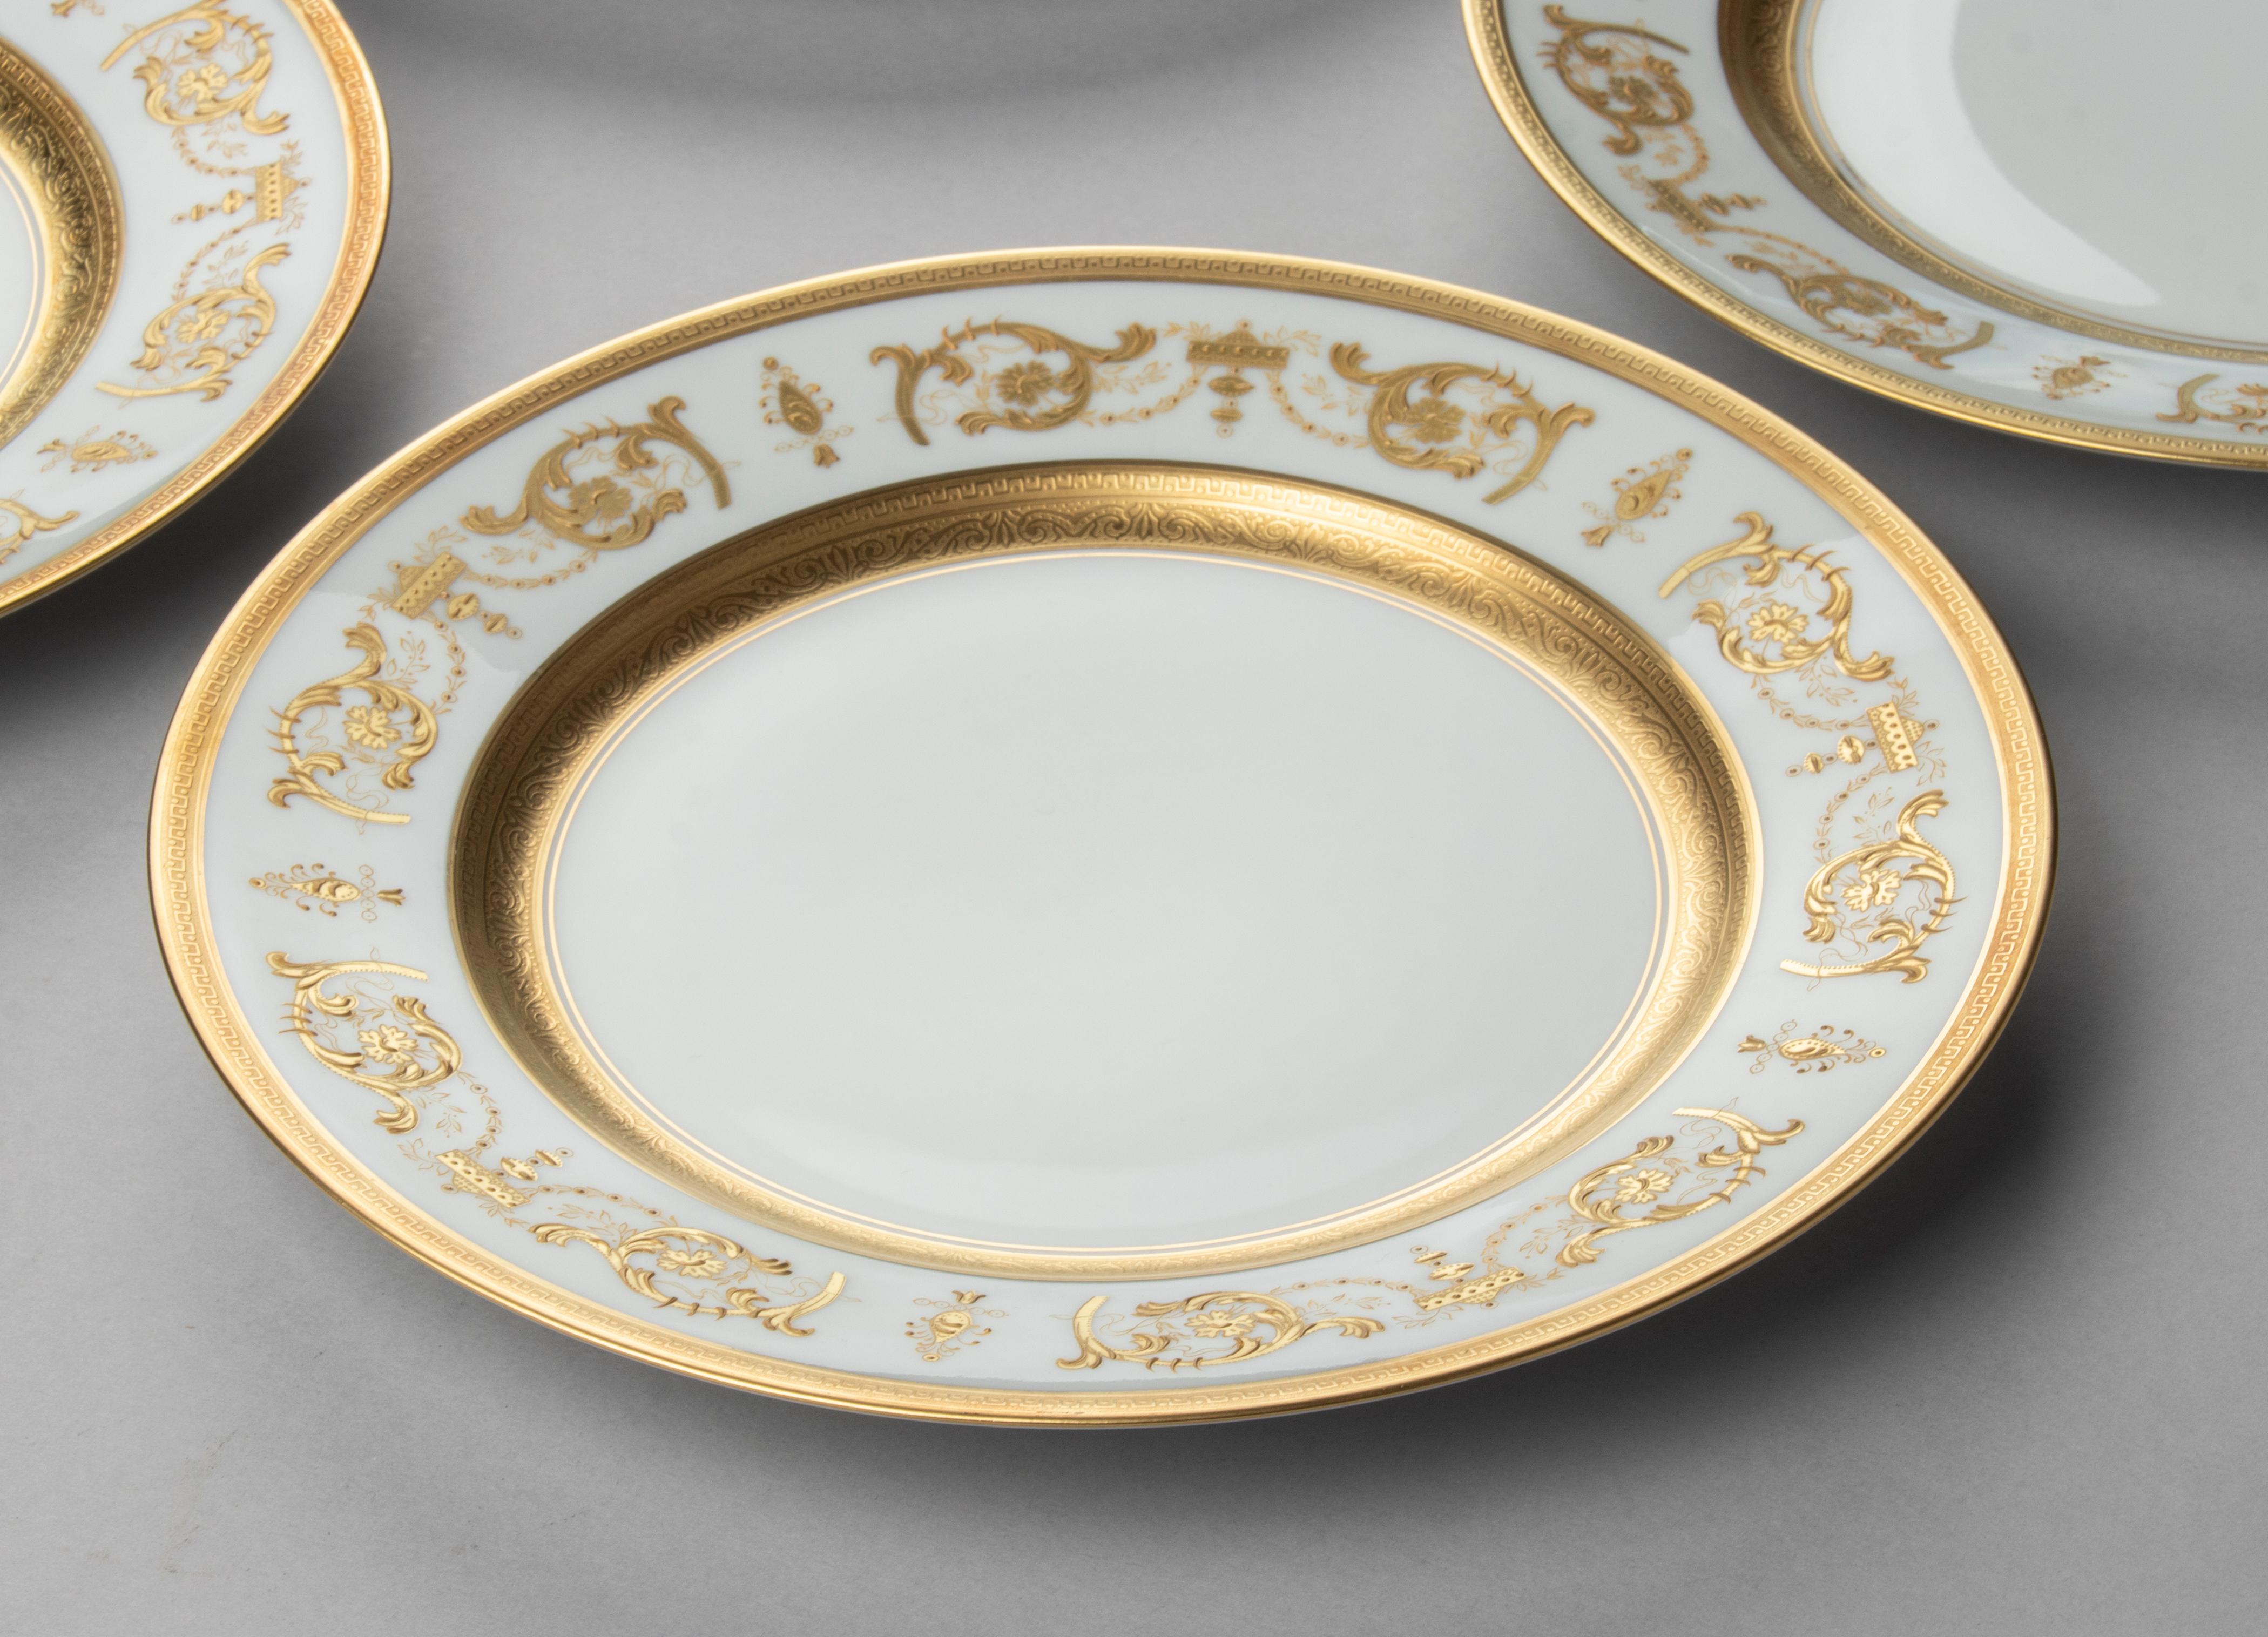 Set of 6 Porcelain Dinner Plates made by Haviland model Impérator Or 1